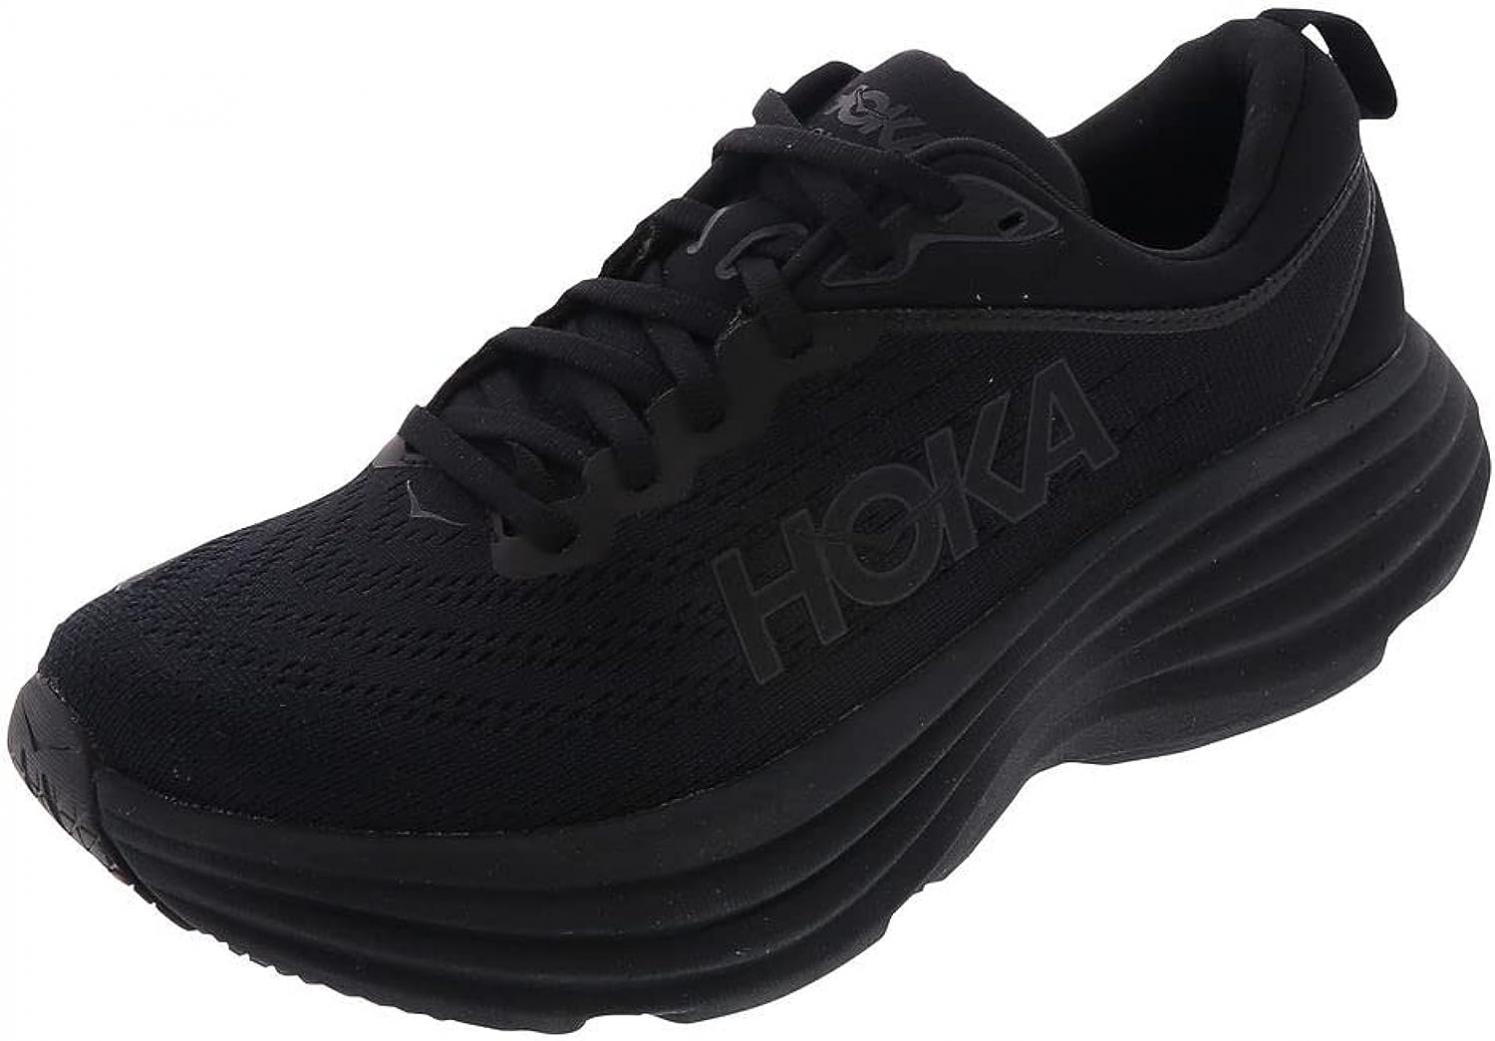 HOKA ONE ONE Women's Running Shoes